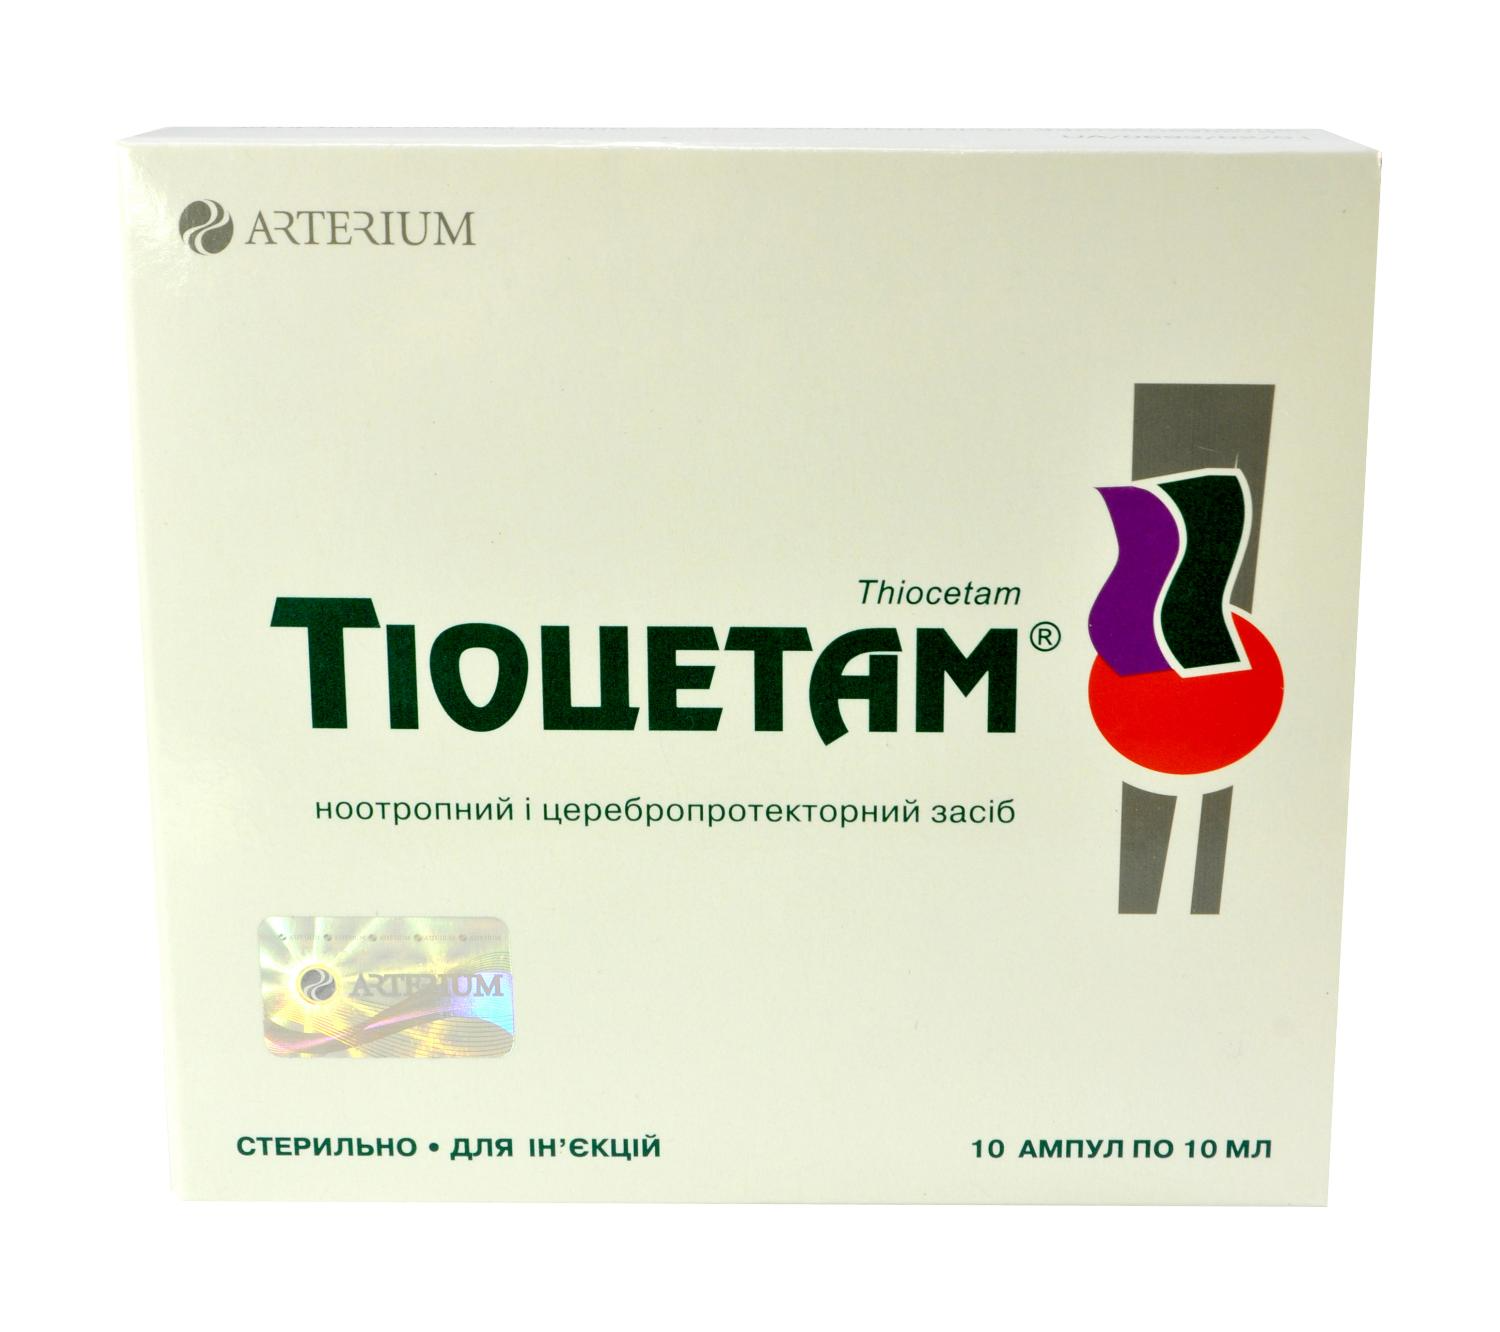 Тіоцетам розчин для ін'єкцій в ампулах по 10 мл, 10 шт.: інструкція .